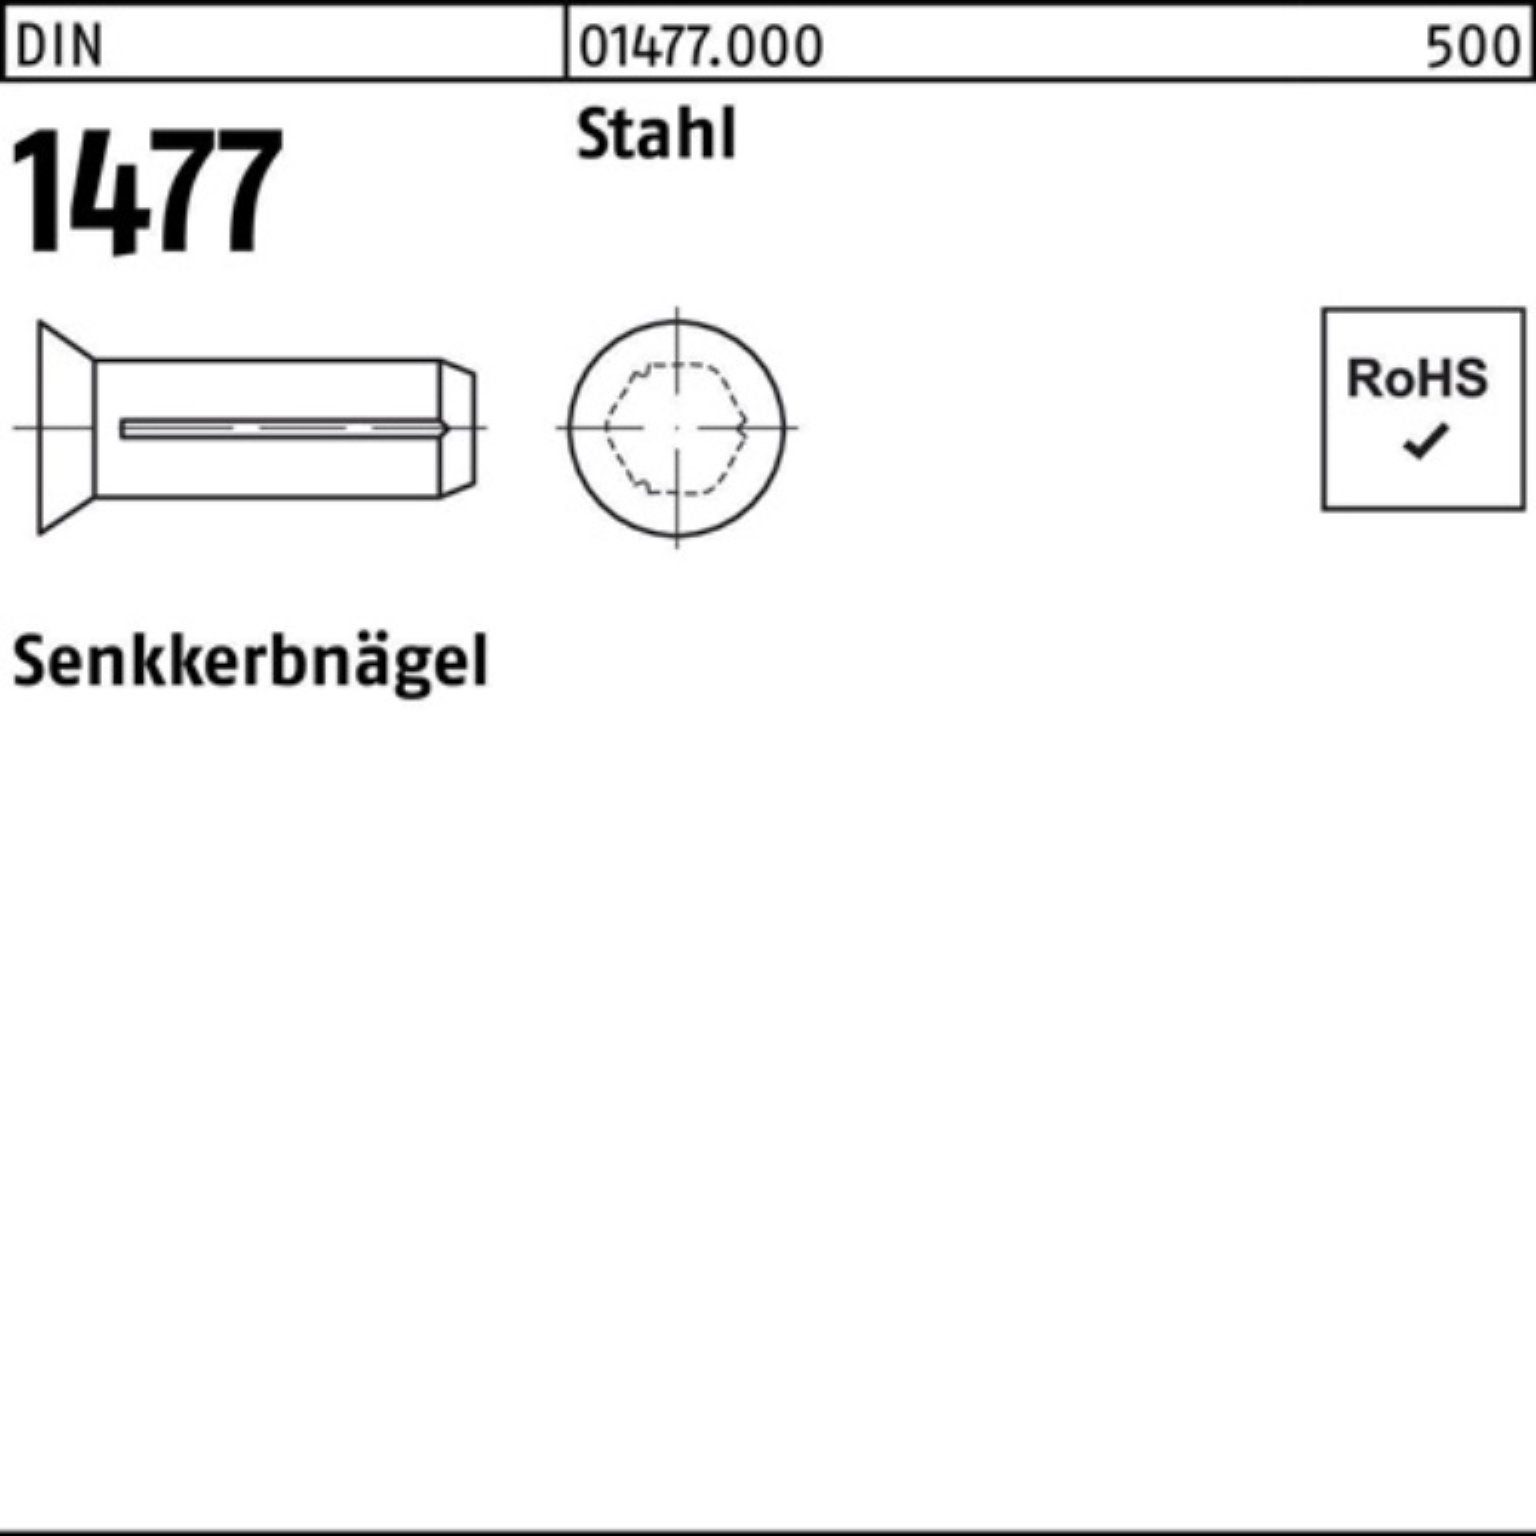 Pack DIN Nagel Stück 1477 Senkkerbnagel Stahl 1477 5x Stah Reyher 250 250er 20 DIN